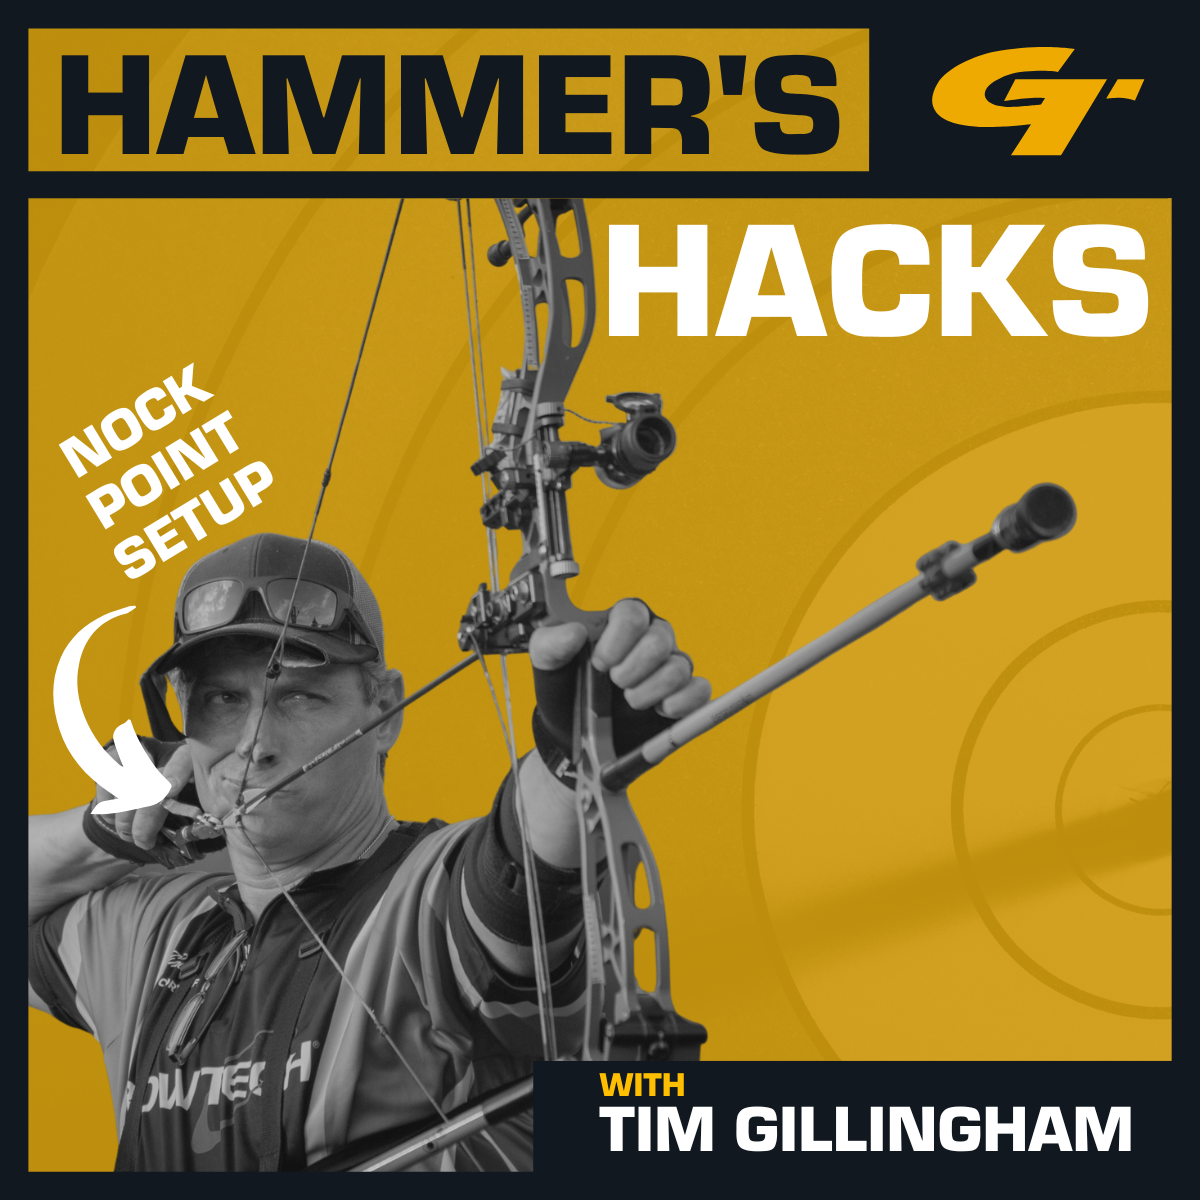 Hammer’s Hack #2 - Nock Point Setup